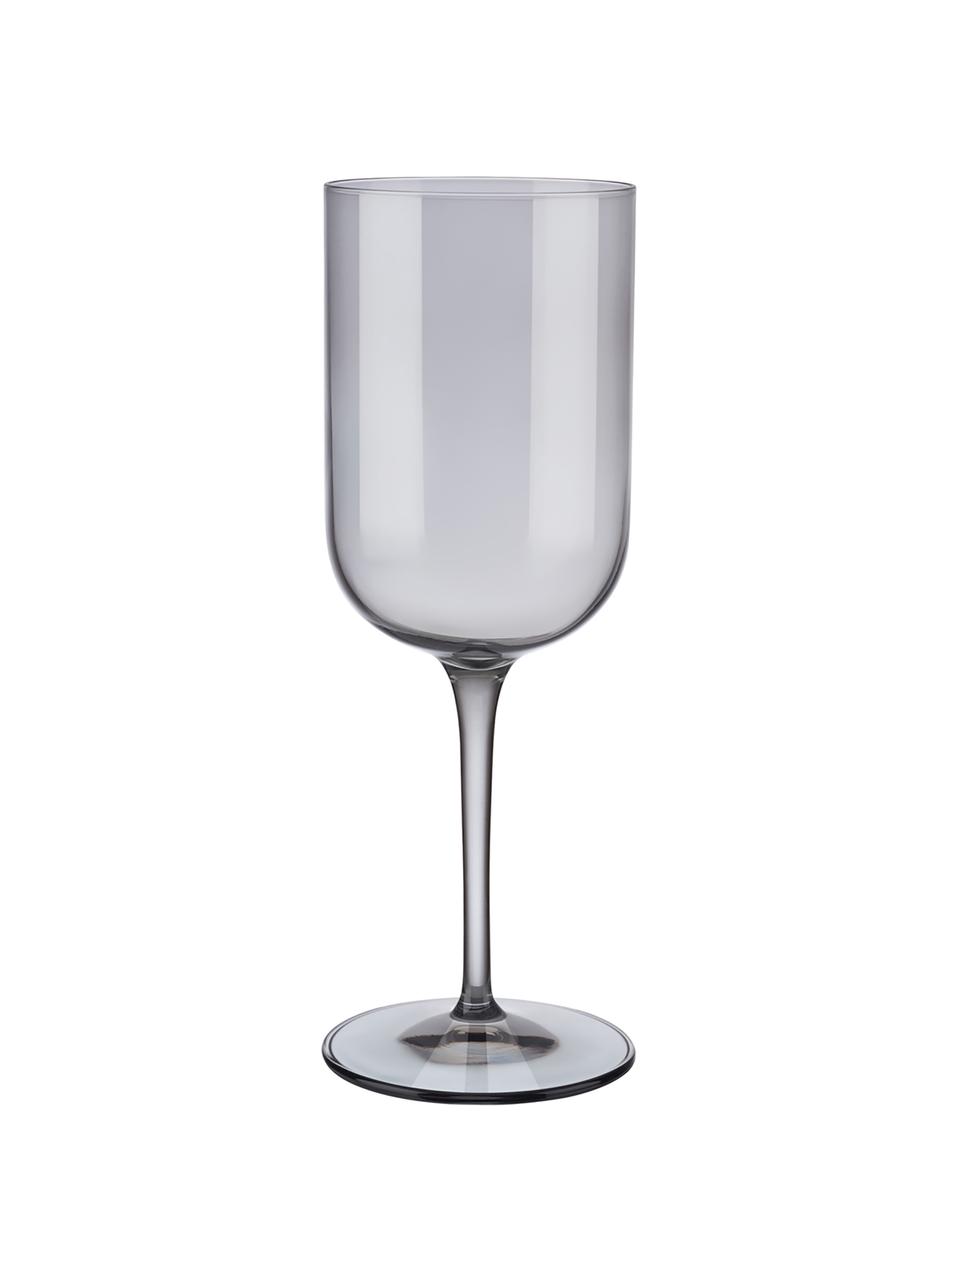 Weingläser Fuum in Grau, 4 Stück, Glas, Grau, transparent, Ø 8 x H 22 cm, 400 ml